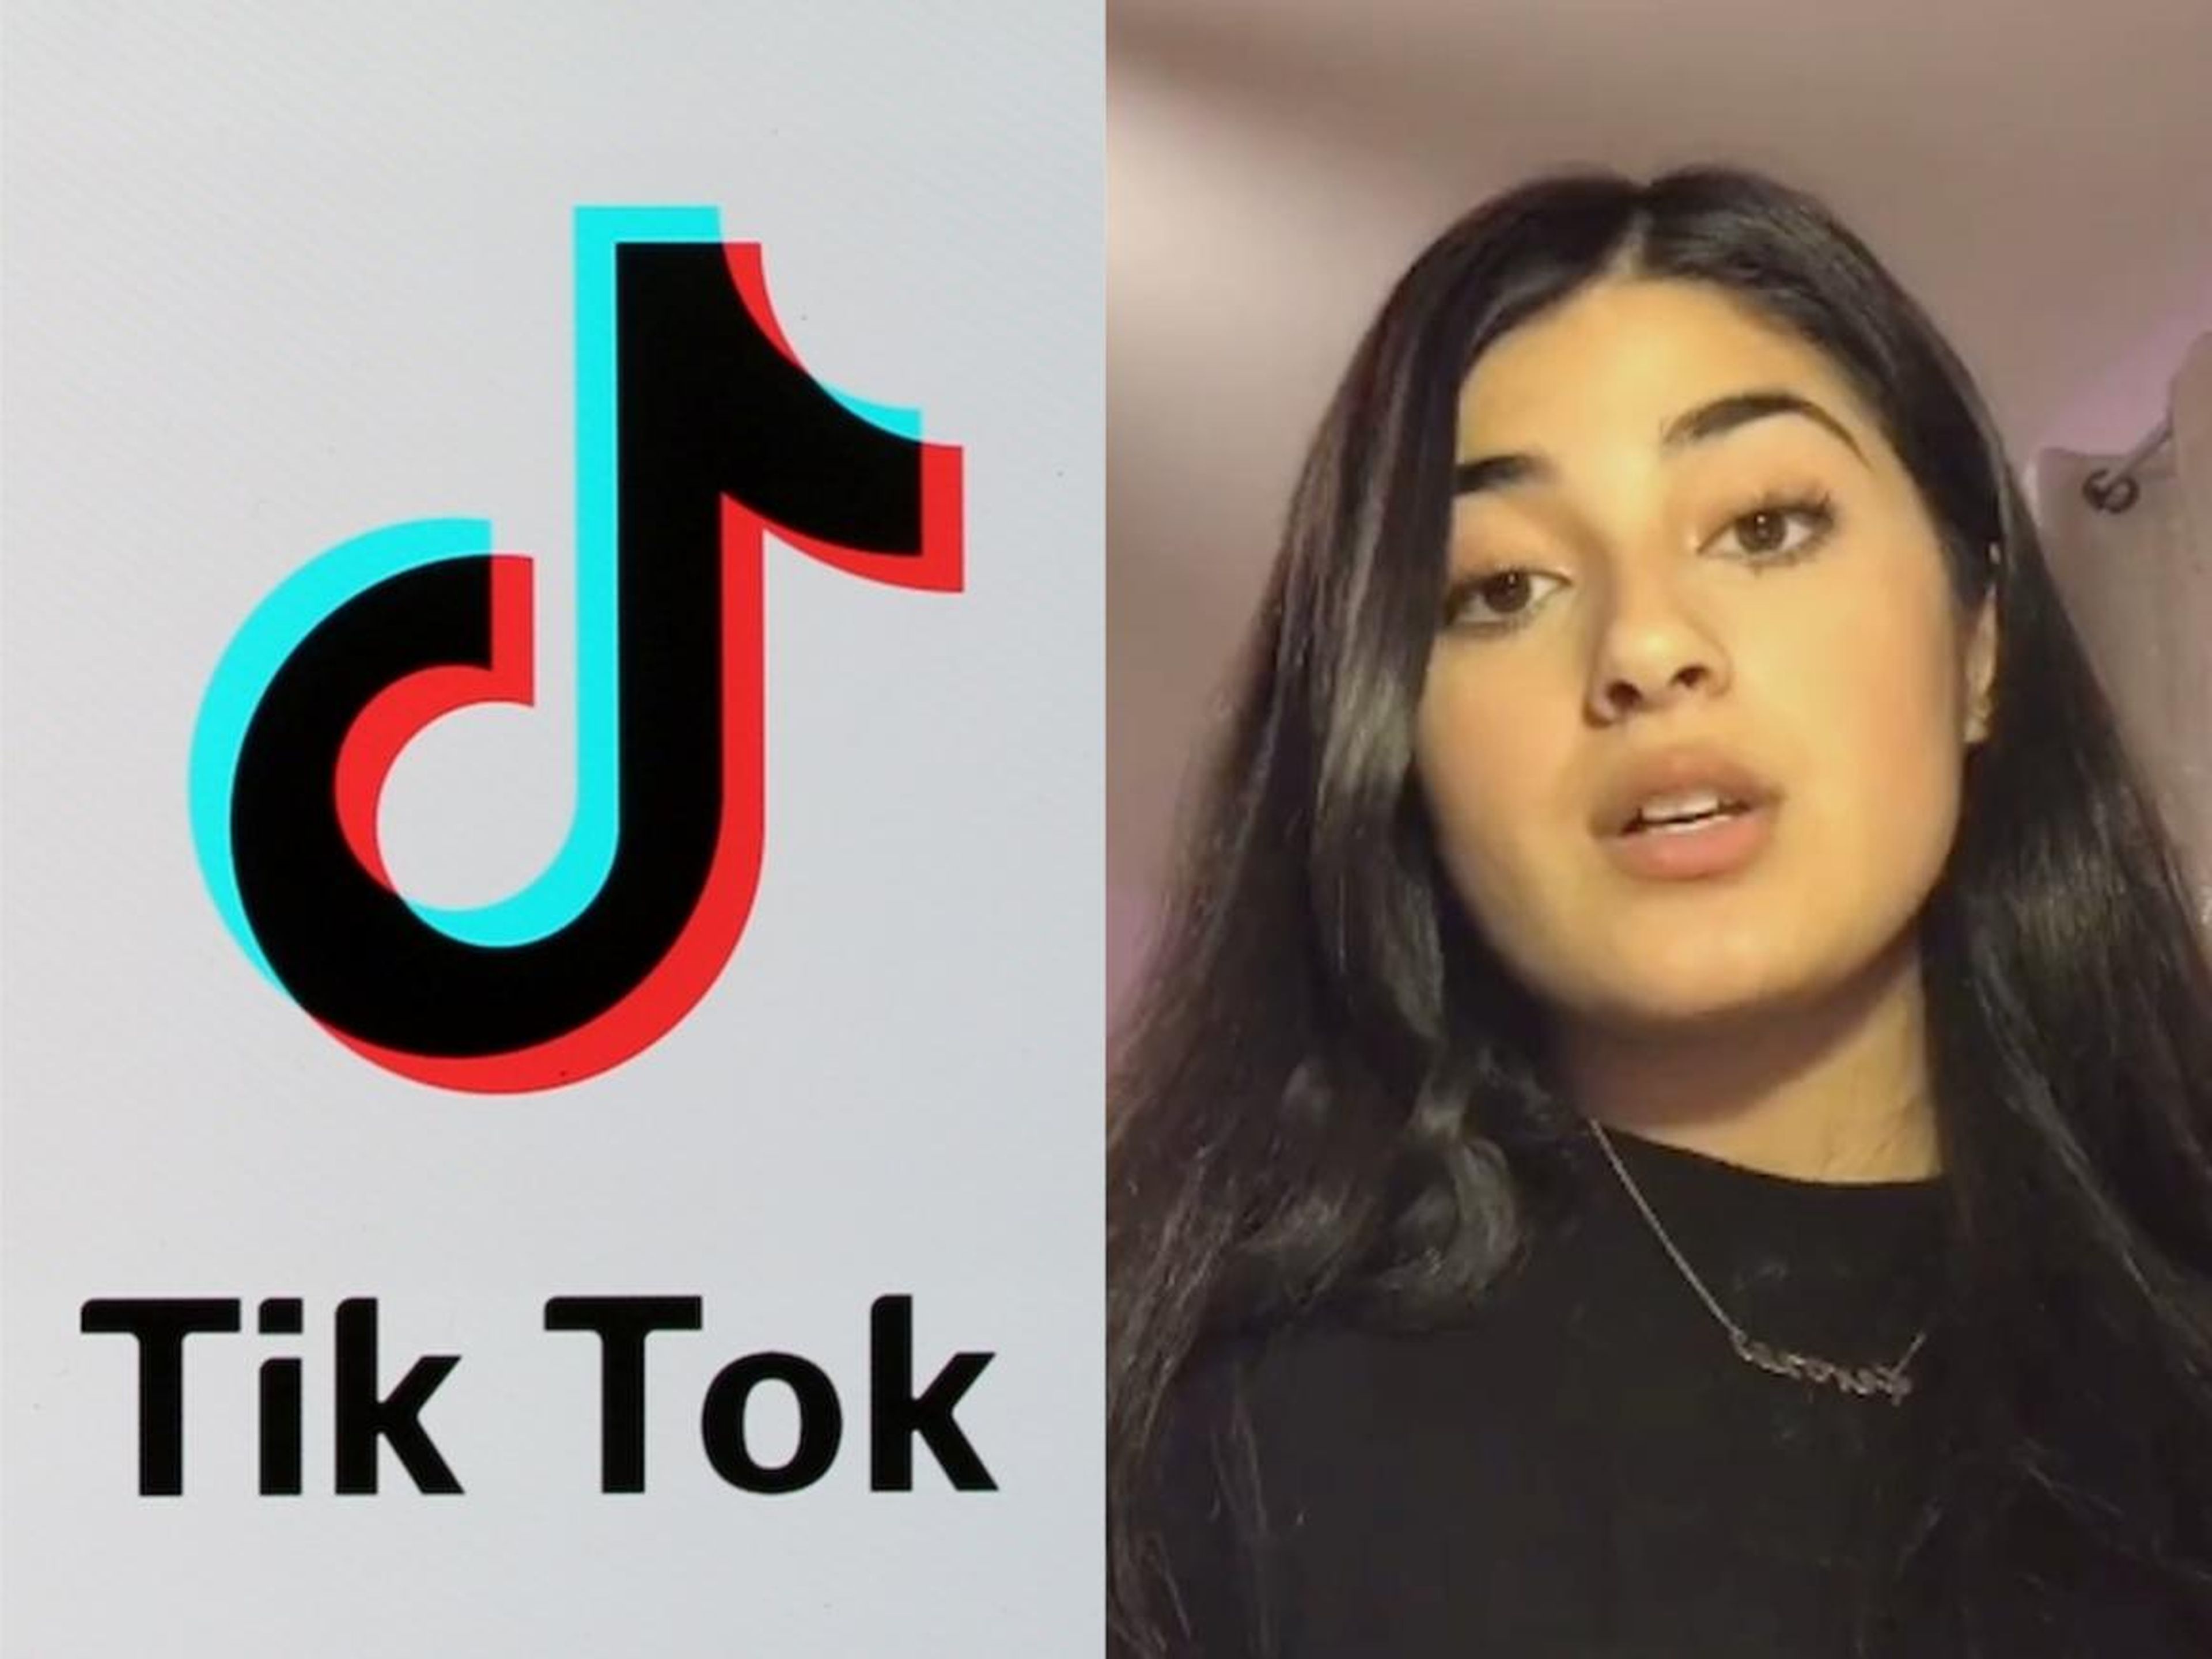 Un montaje del logo de TikTok y de Feroza Aziz, la joven de 17 años que fue expulsada de la plataforma poco después de publicar vídeos condenando a China.